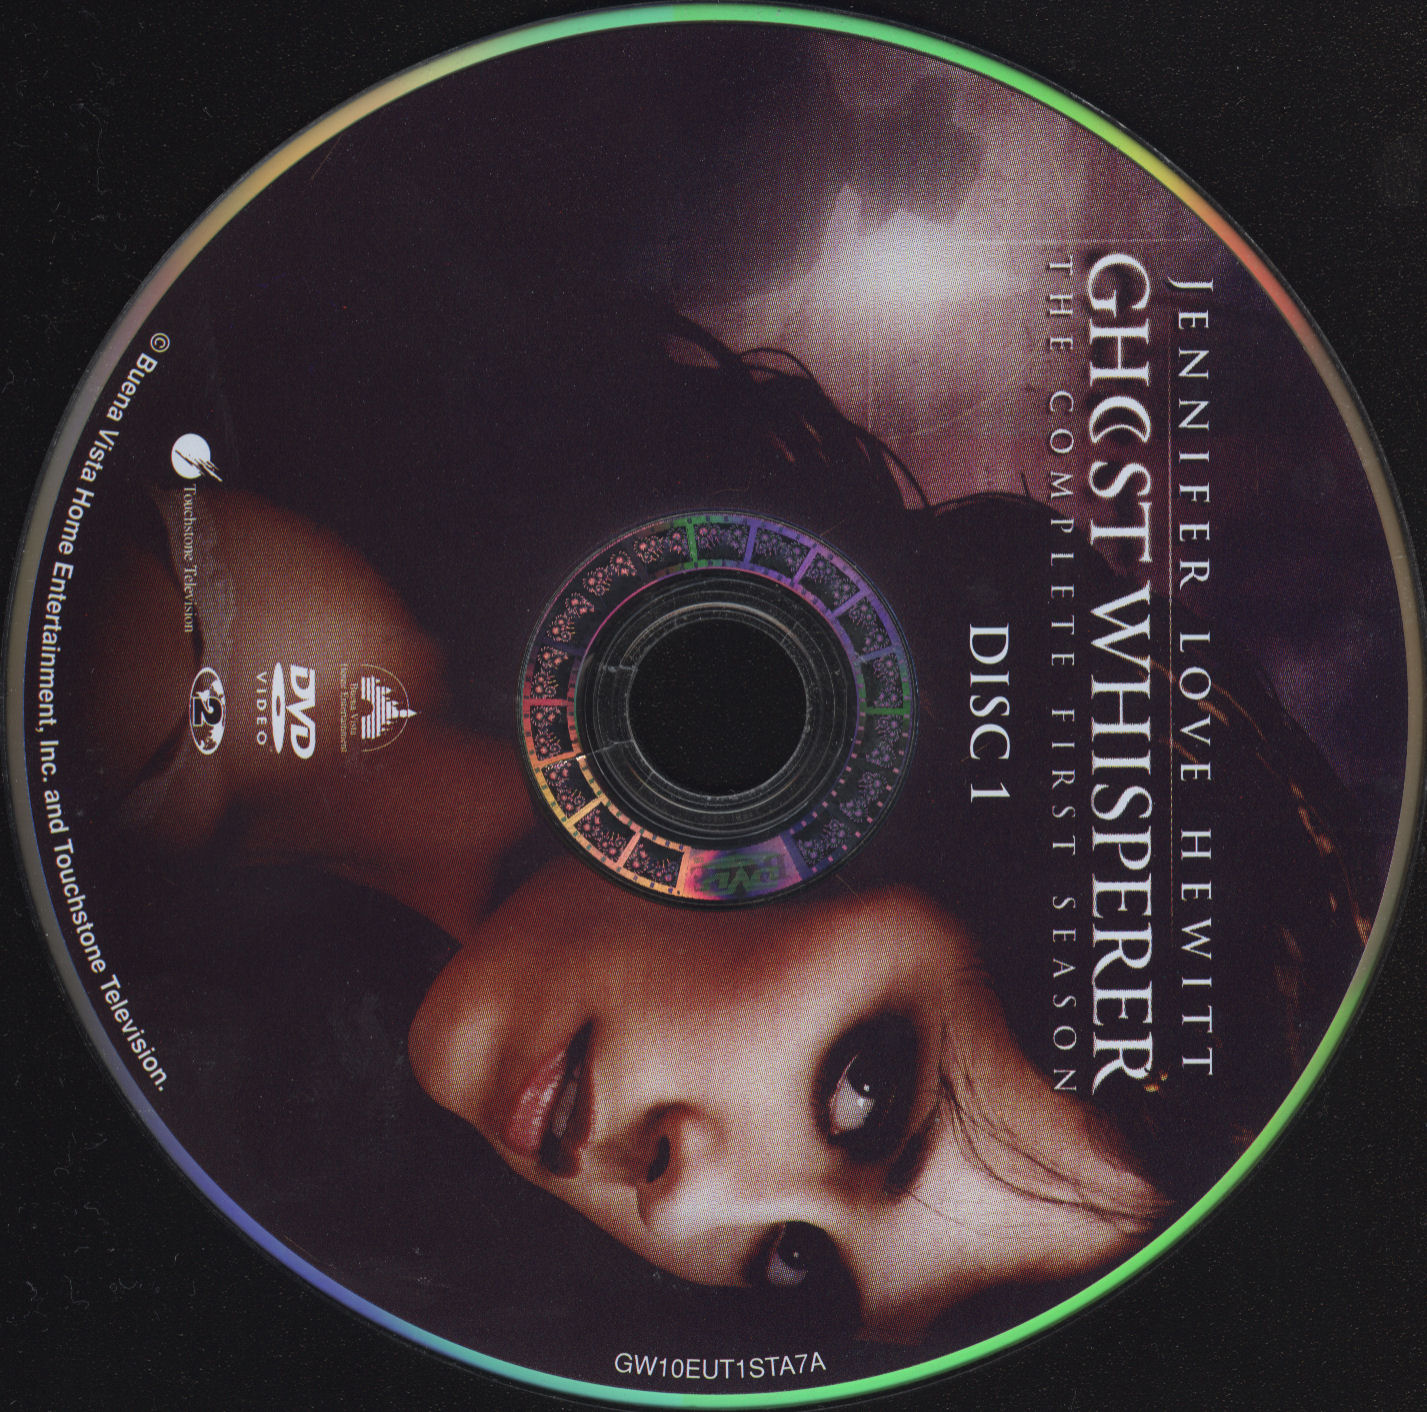 Ghost whisperer Saison 1 DISC 1